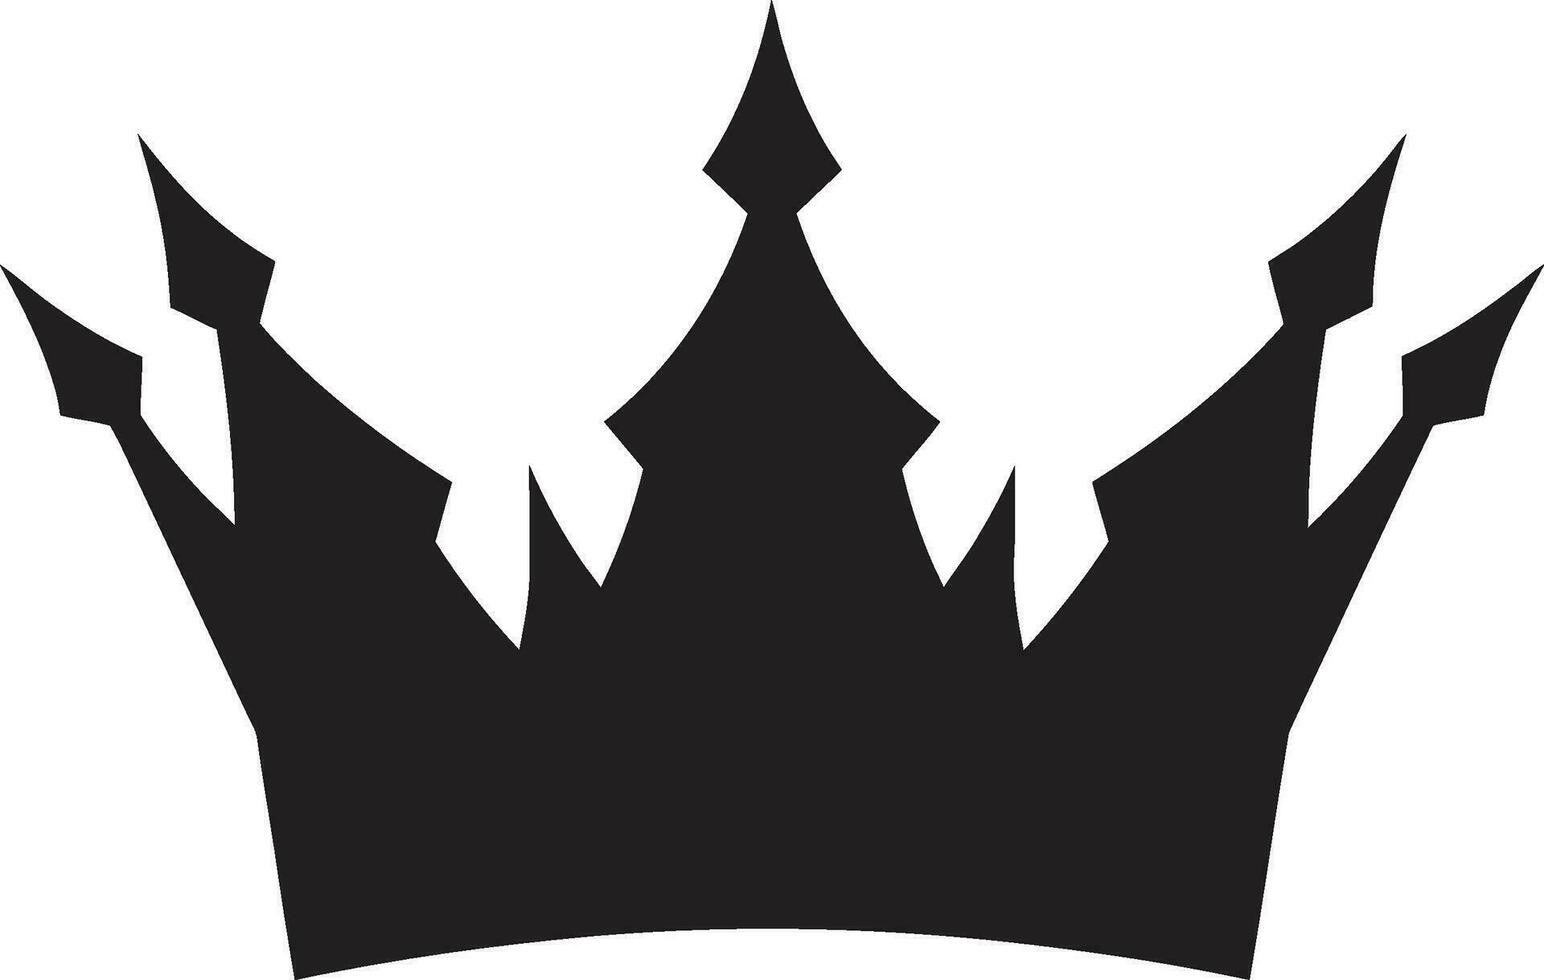 Royal la maîtrise couronne logo dans monochrome monarques insigne noir couronne vecteur icône